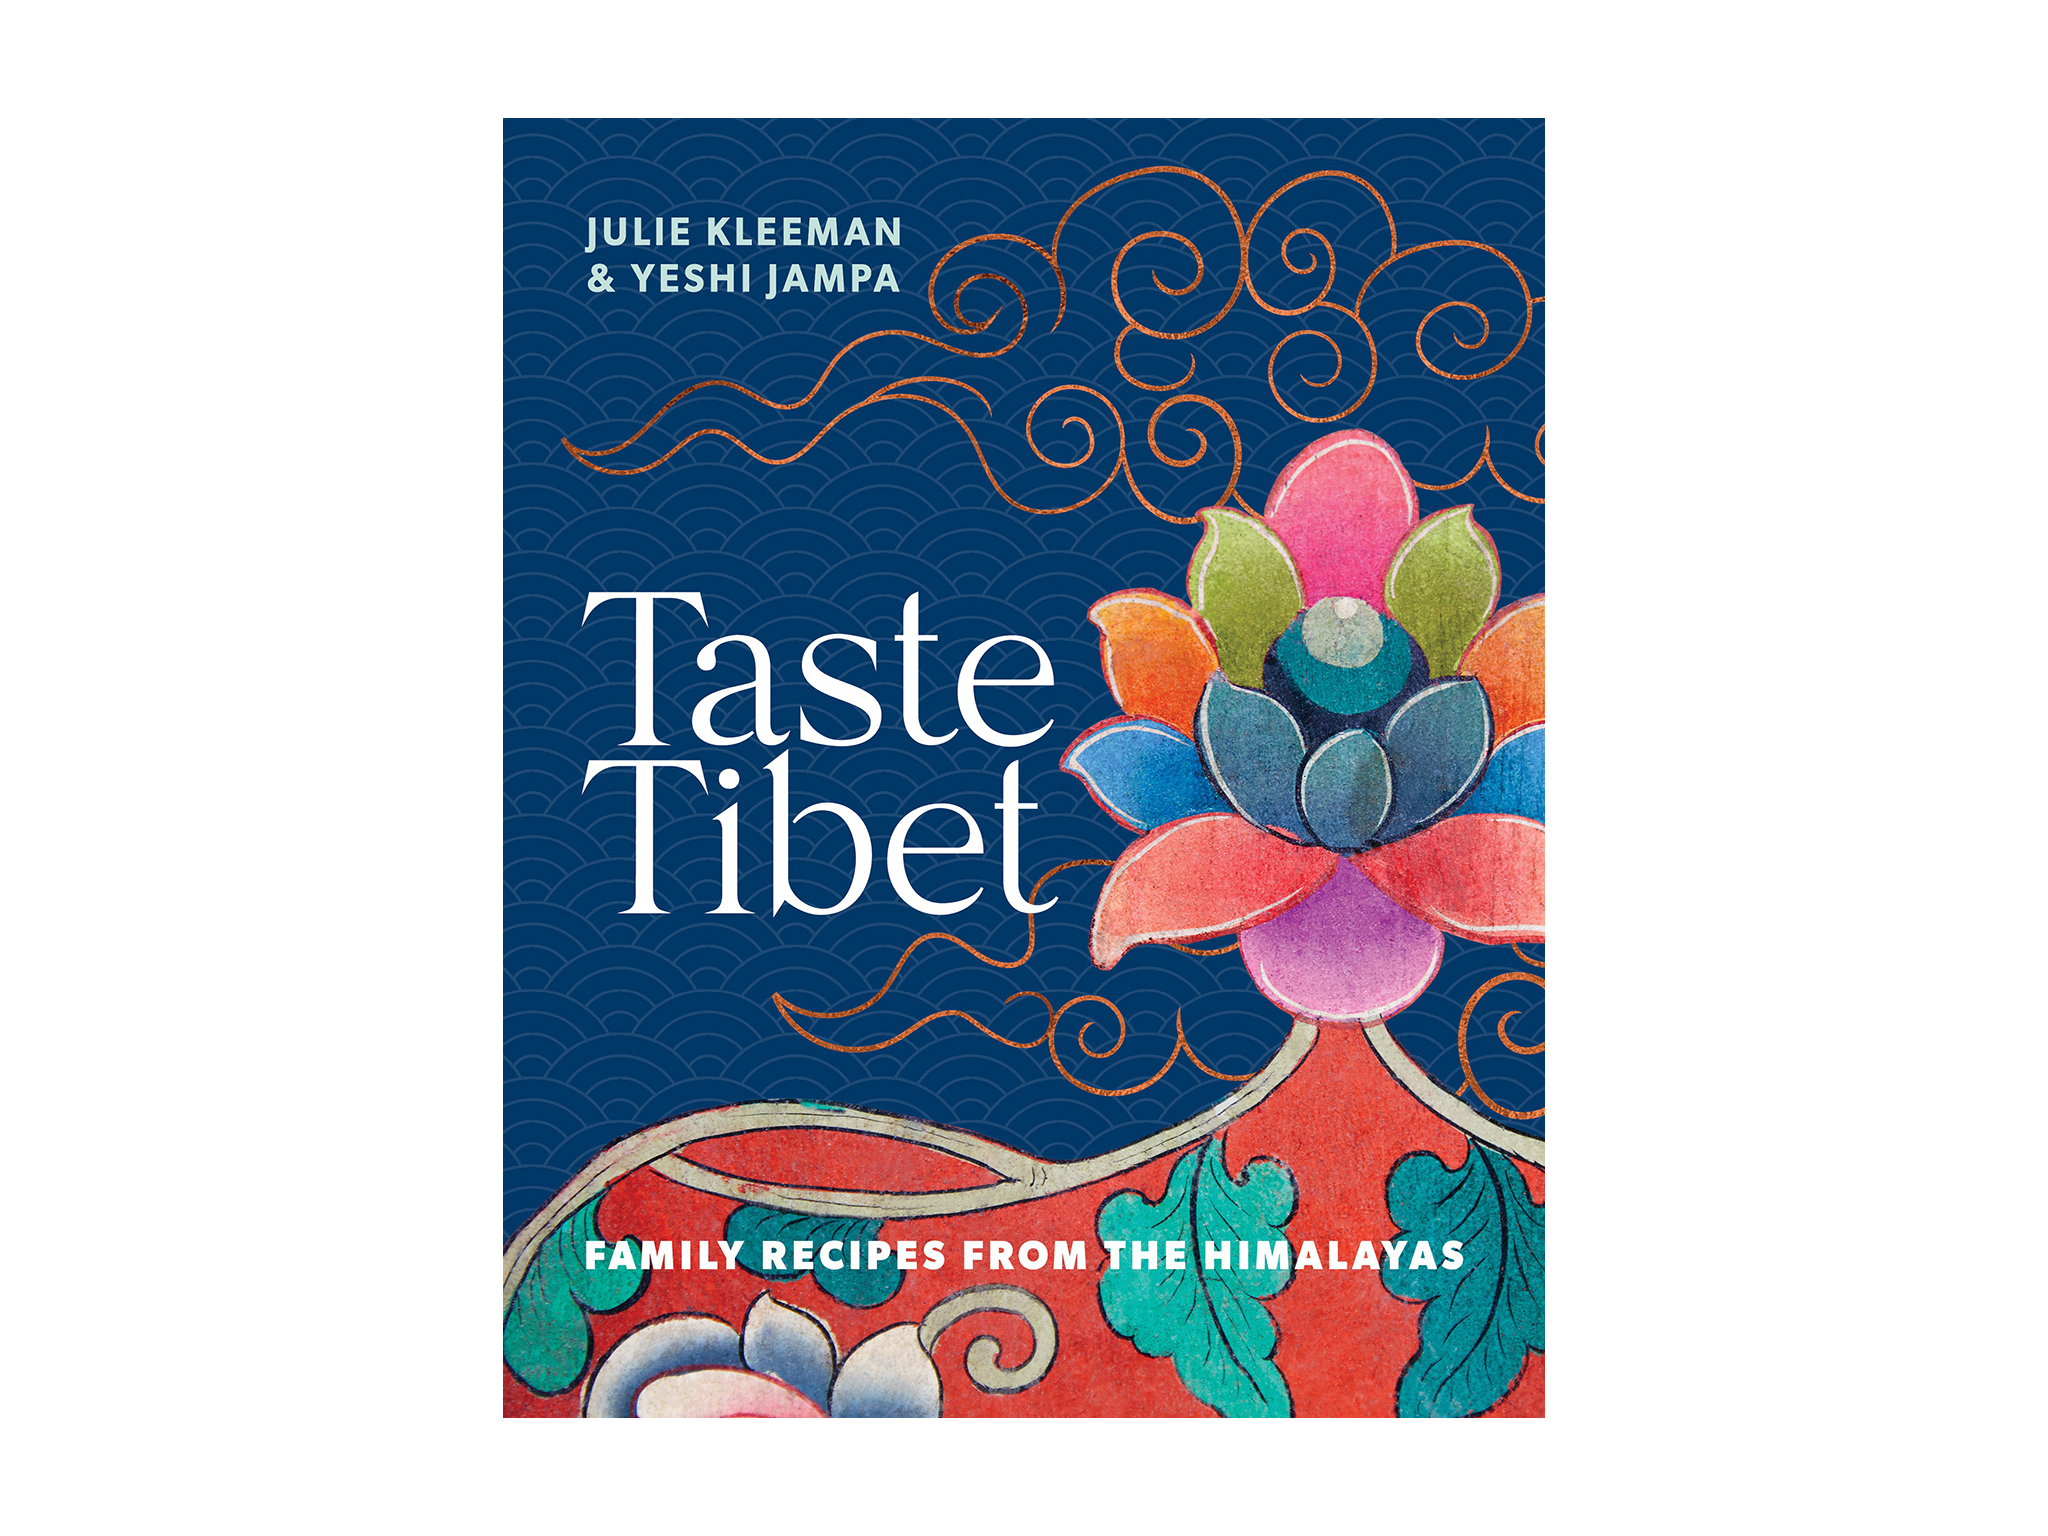 ‘Taste Tibet’ by Julie Kleeman, published by Murdoch